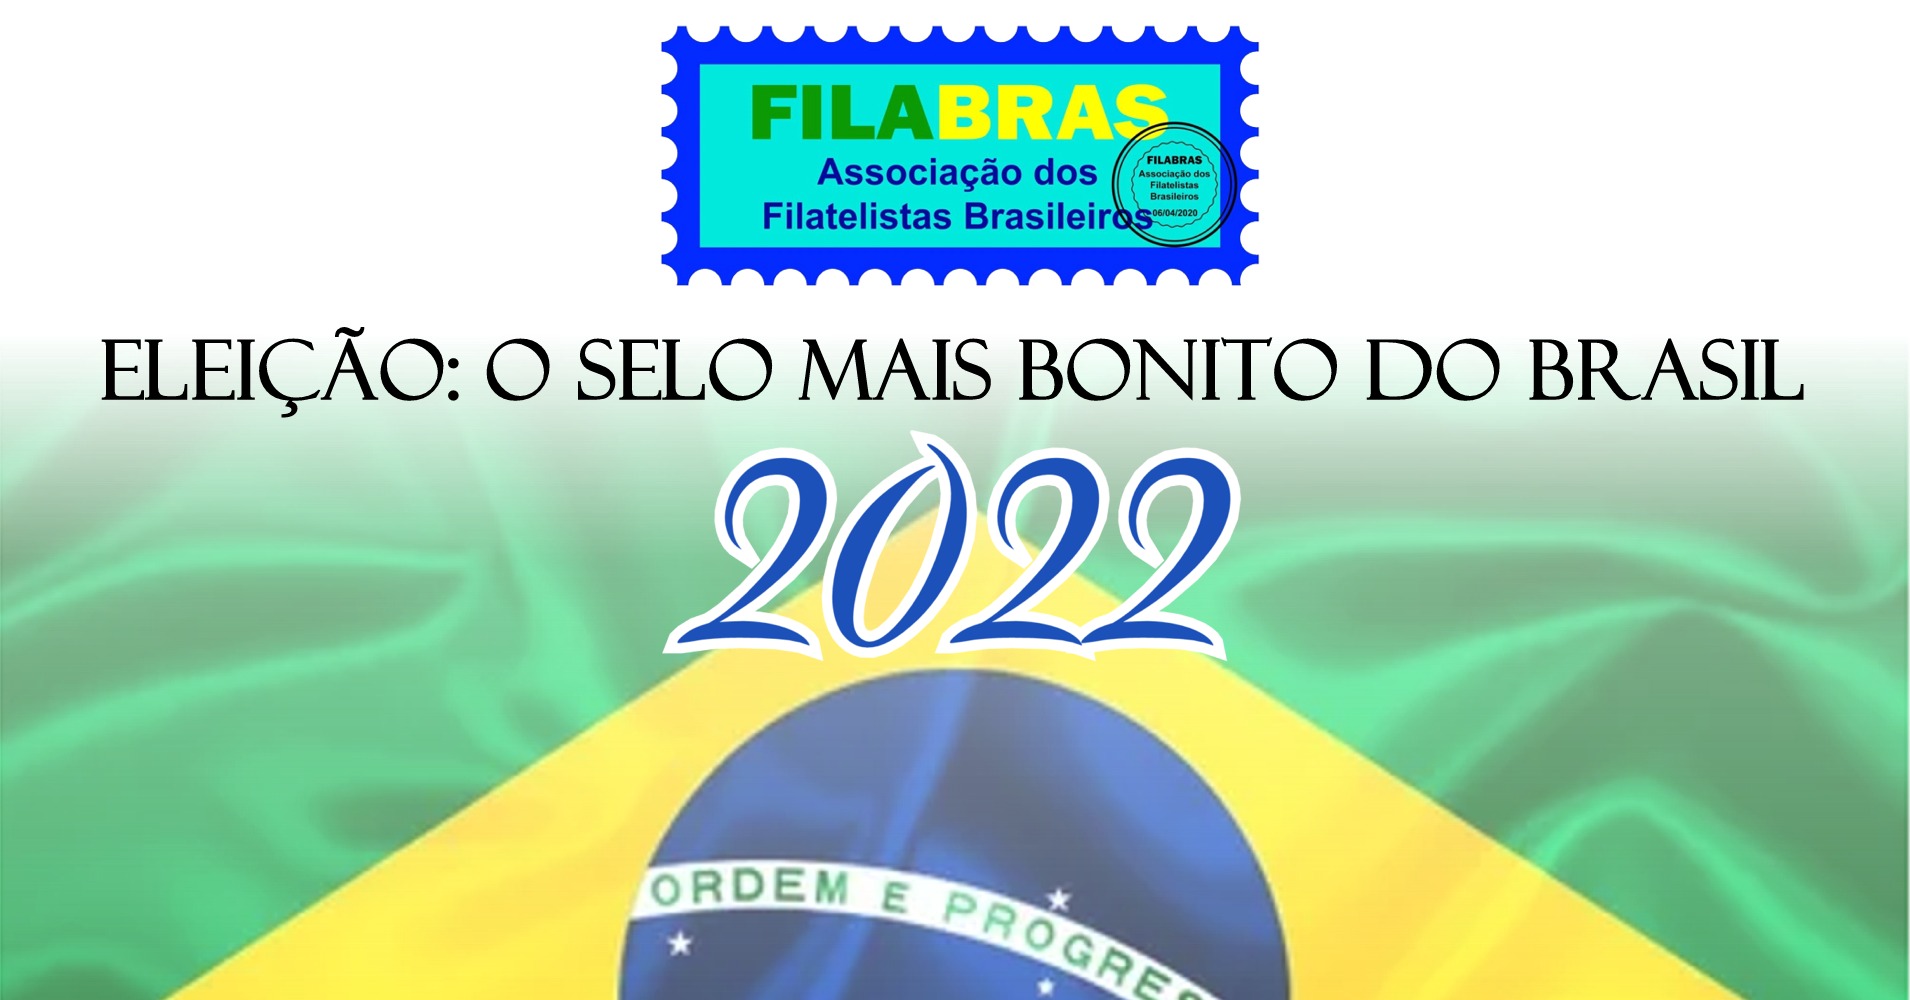 Eleição: Selo mais bonito do Brasil 2022